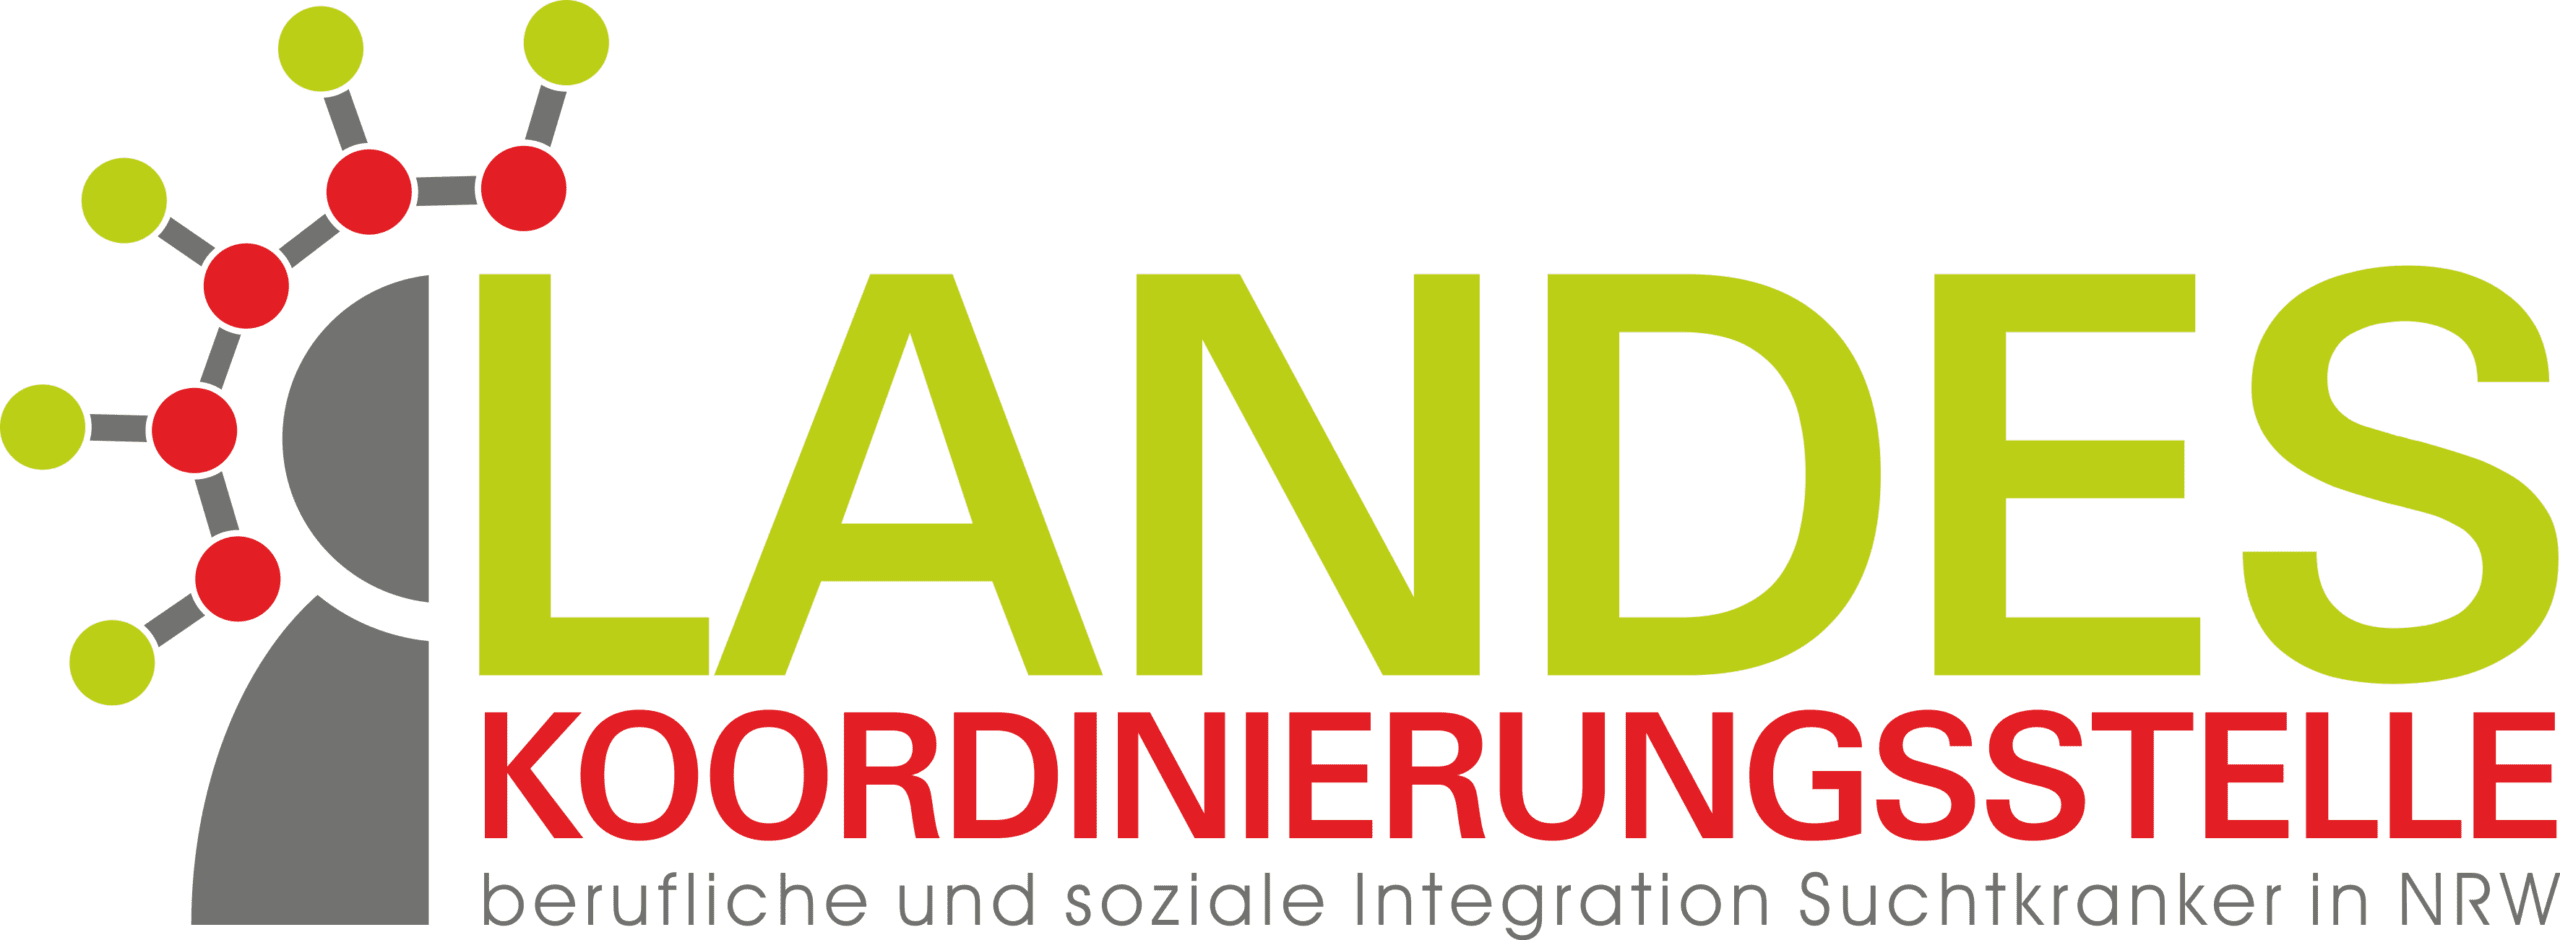 Landeskoordinierungsstelle berufliche und soziale Integration Suchtkranker in NRW